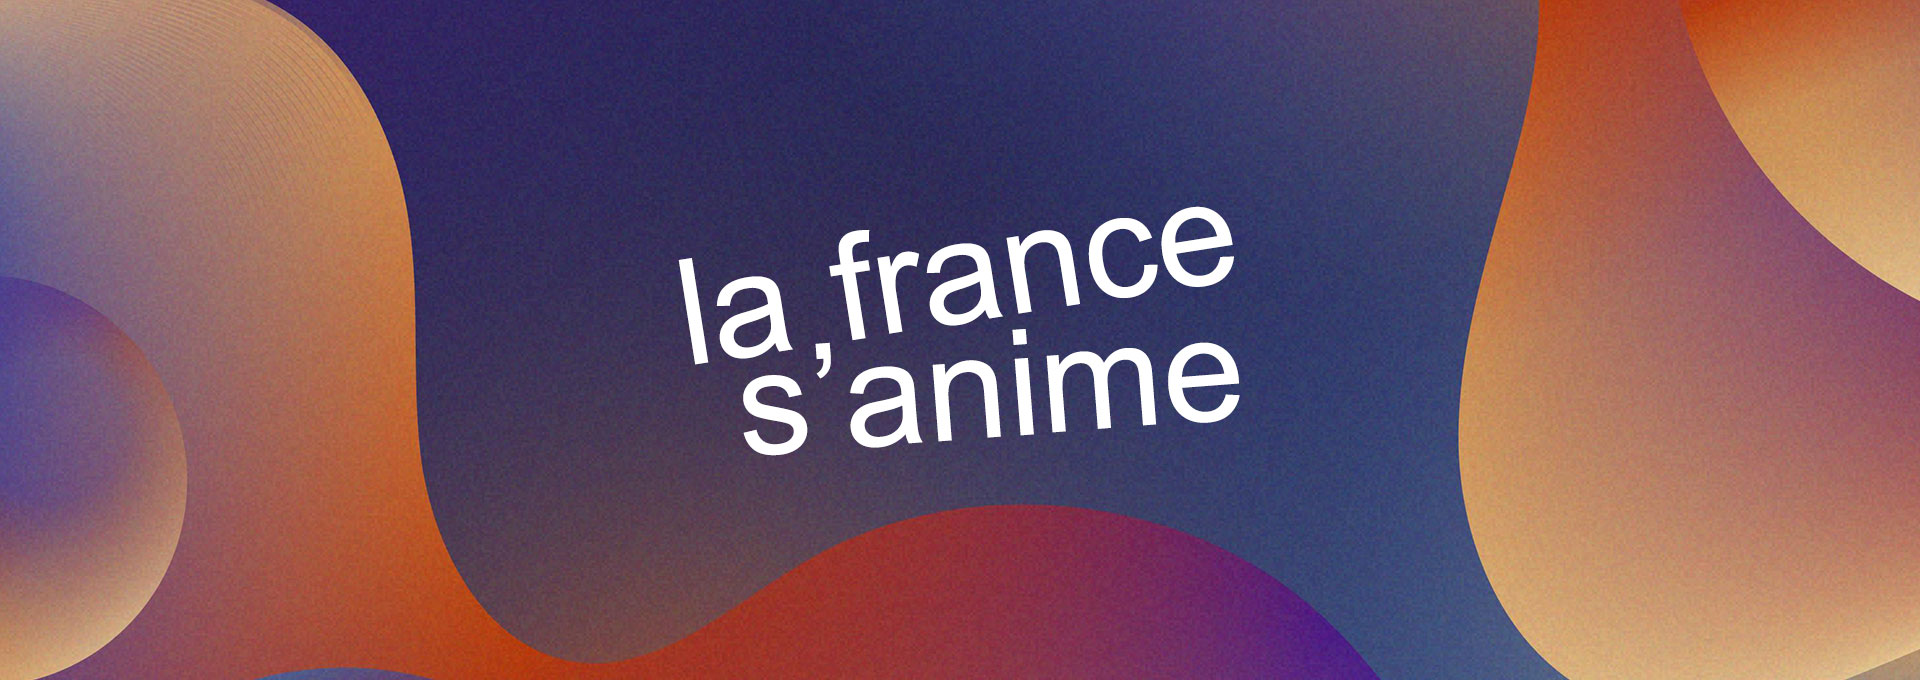 France as an anime girl : r/dalle2